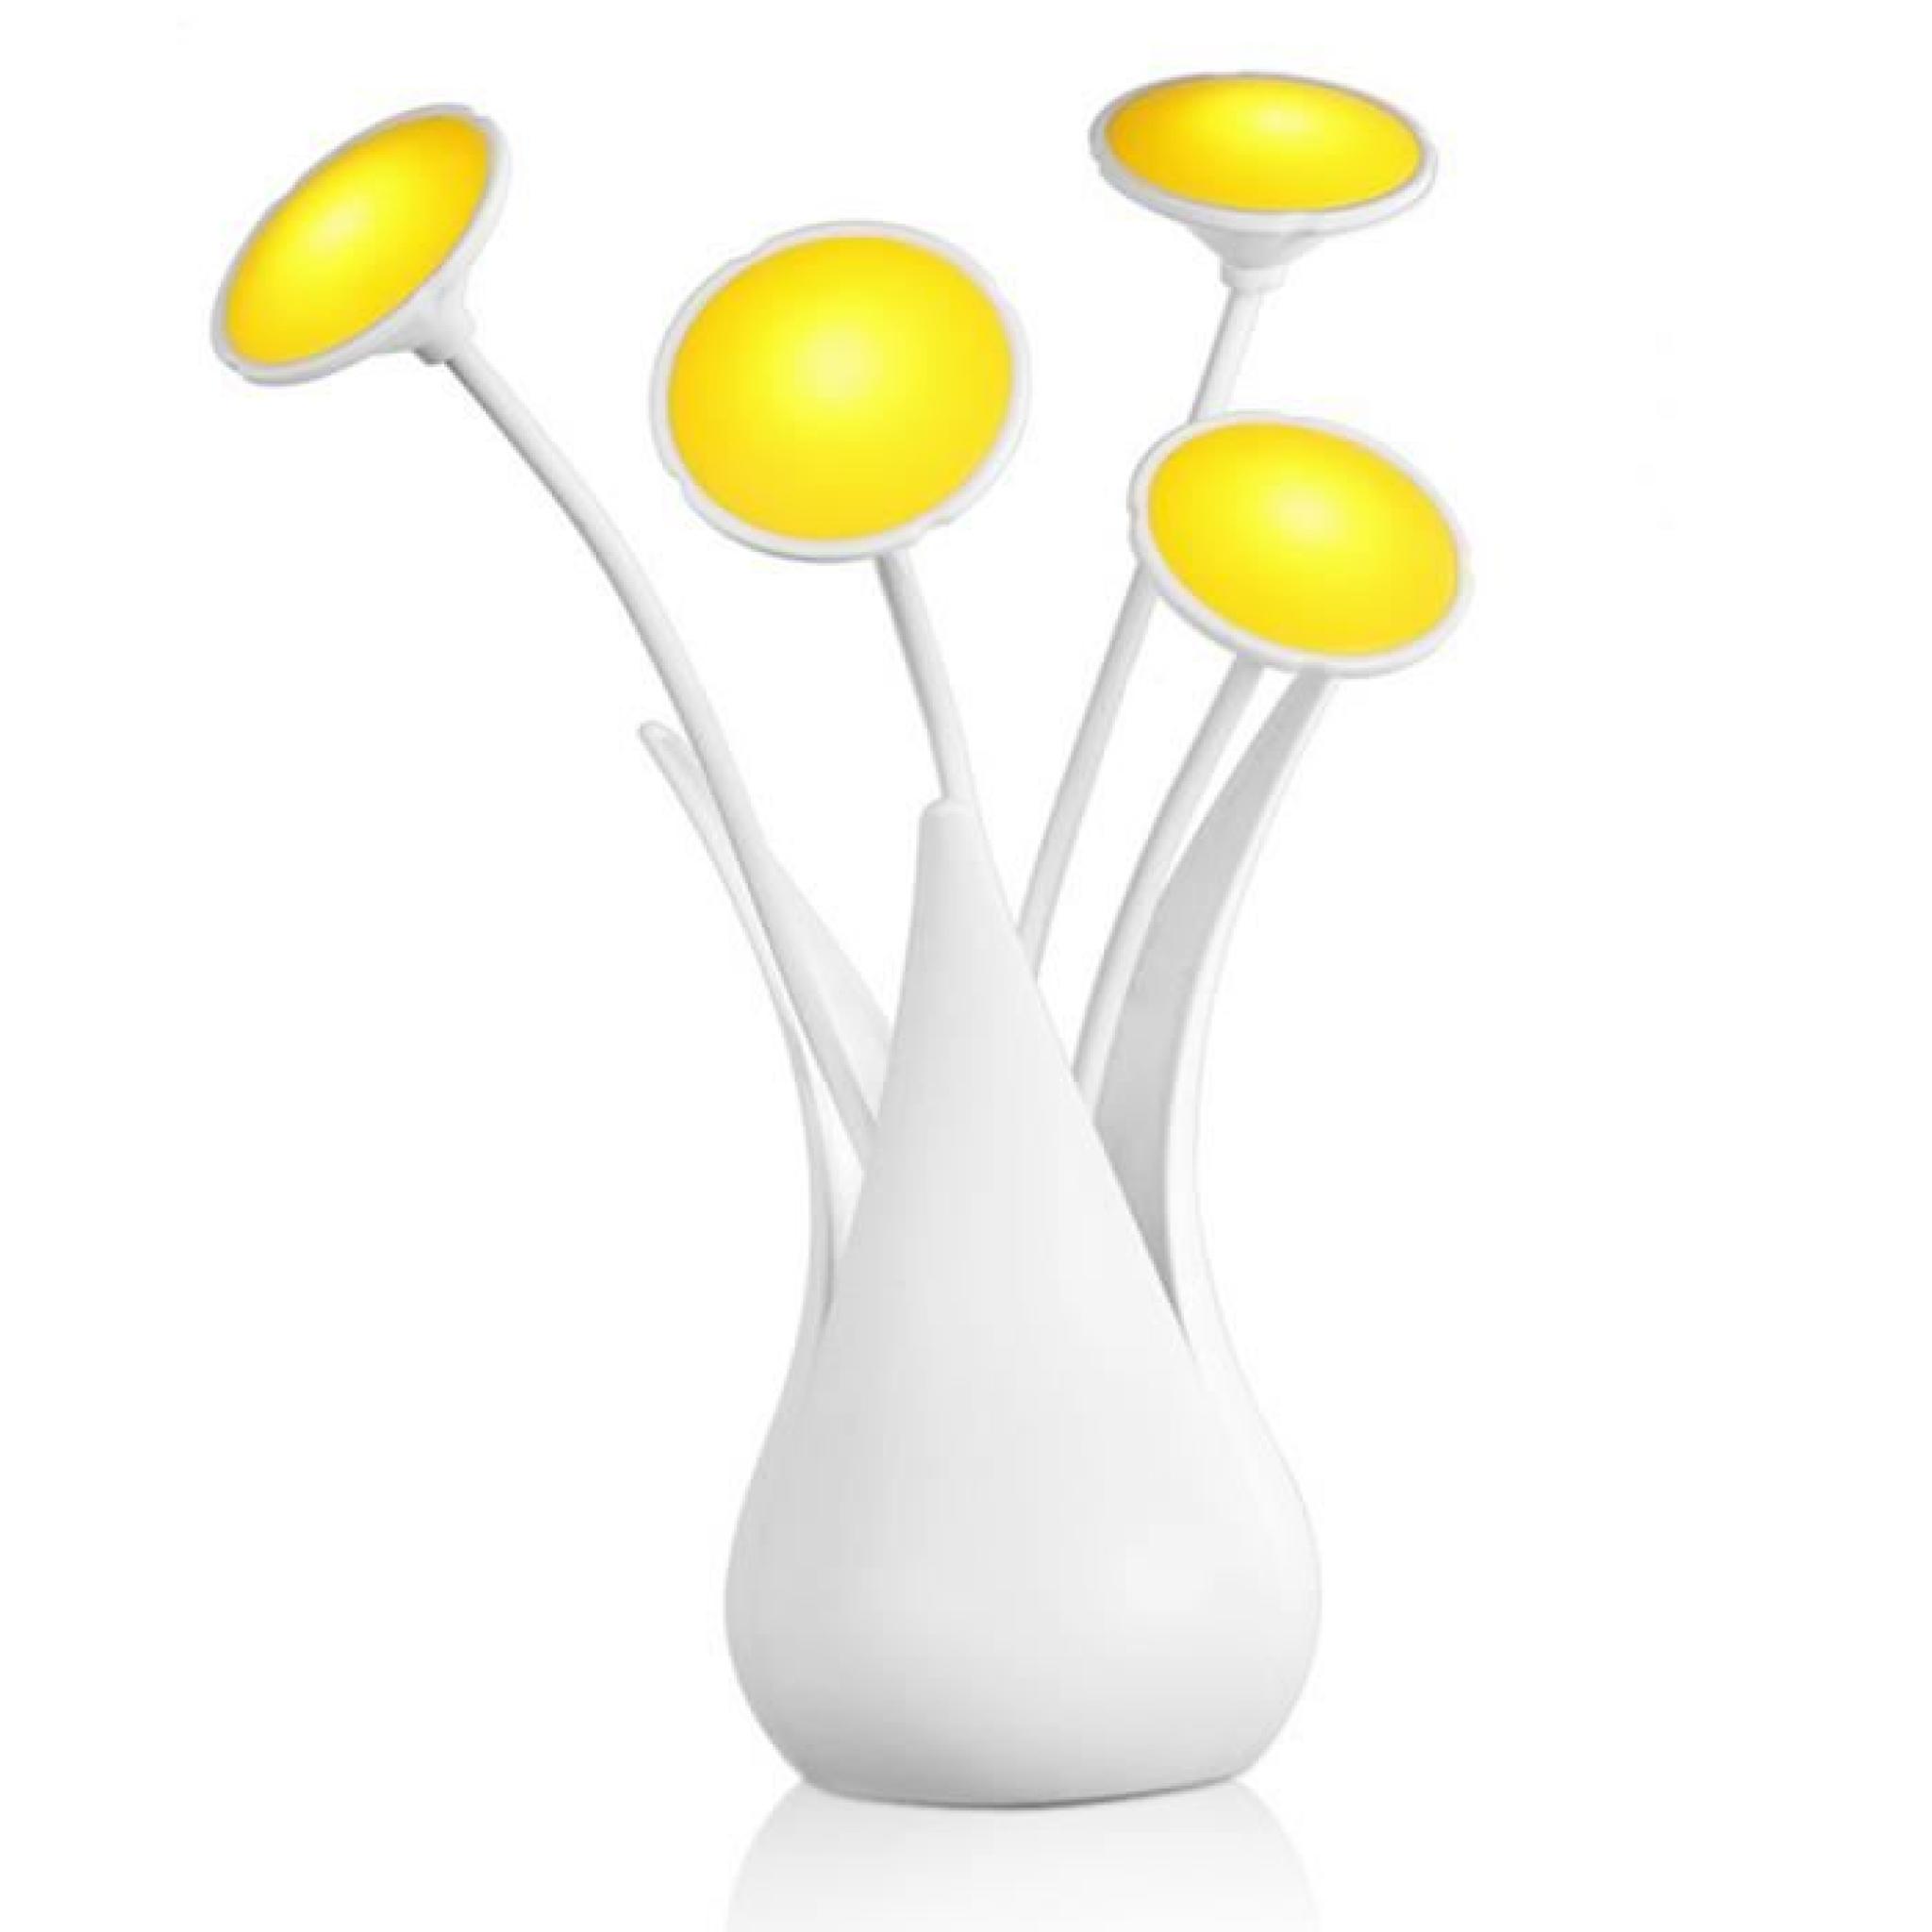 Moonar® USB Soft Light intelligente ménages Lumière Contrôle Night Light  Décoration Lampe  Lampe de chevet Elégante  JAUNE